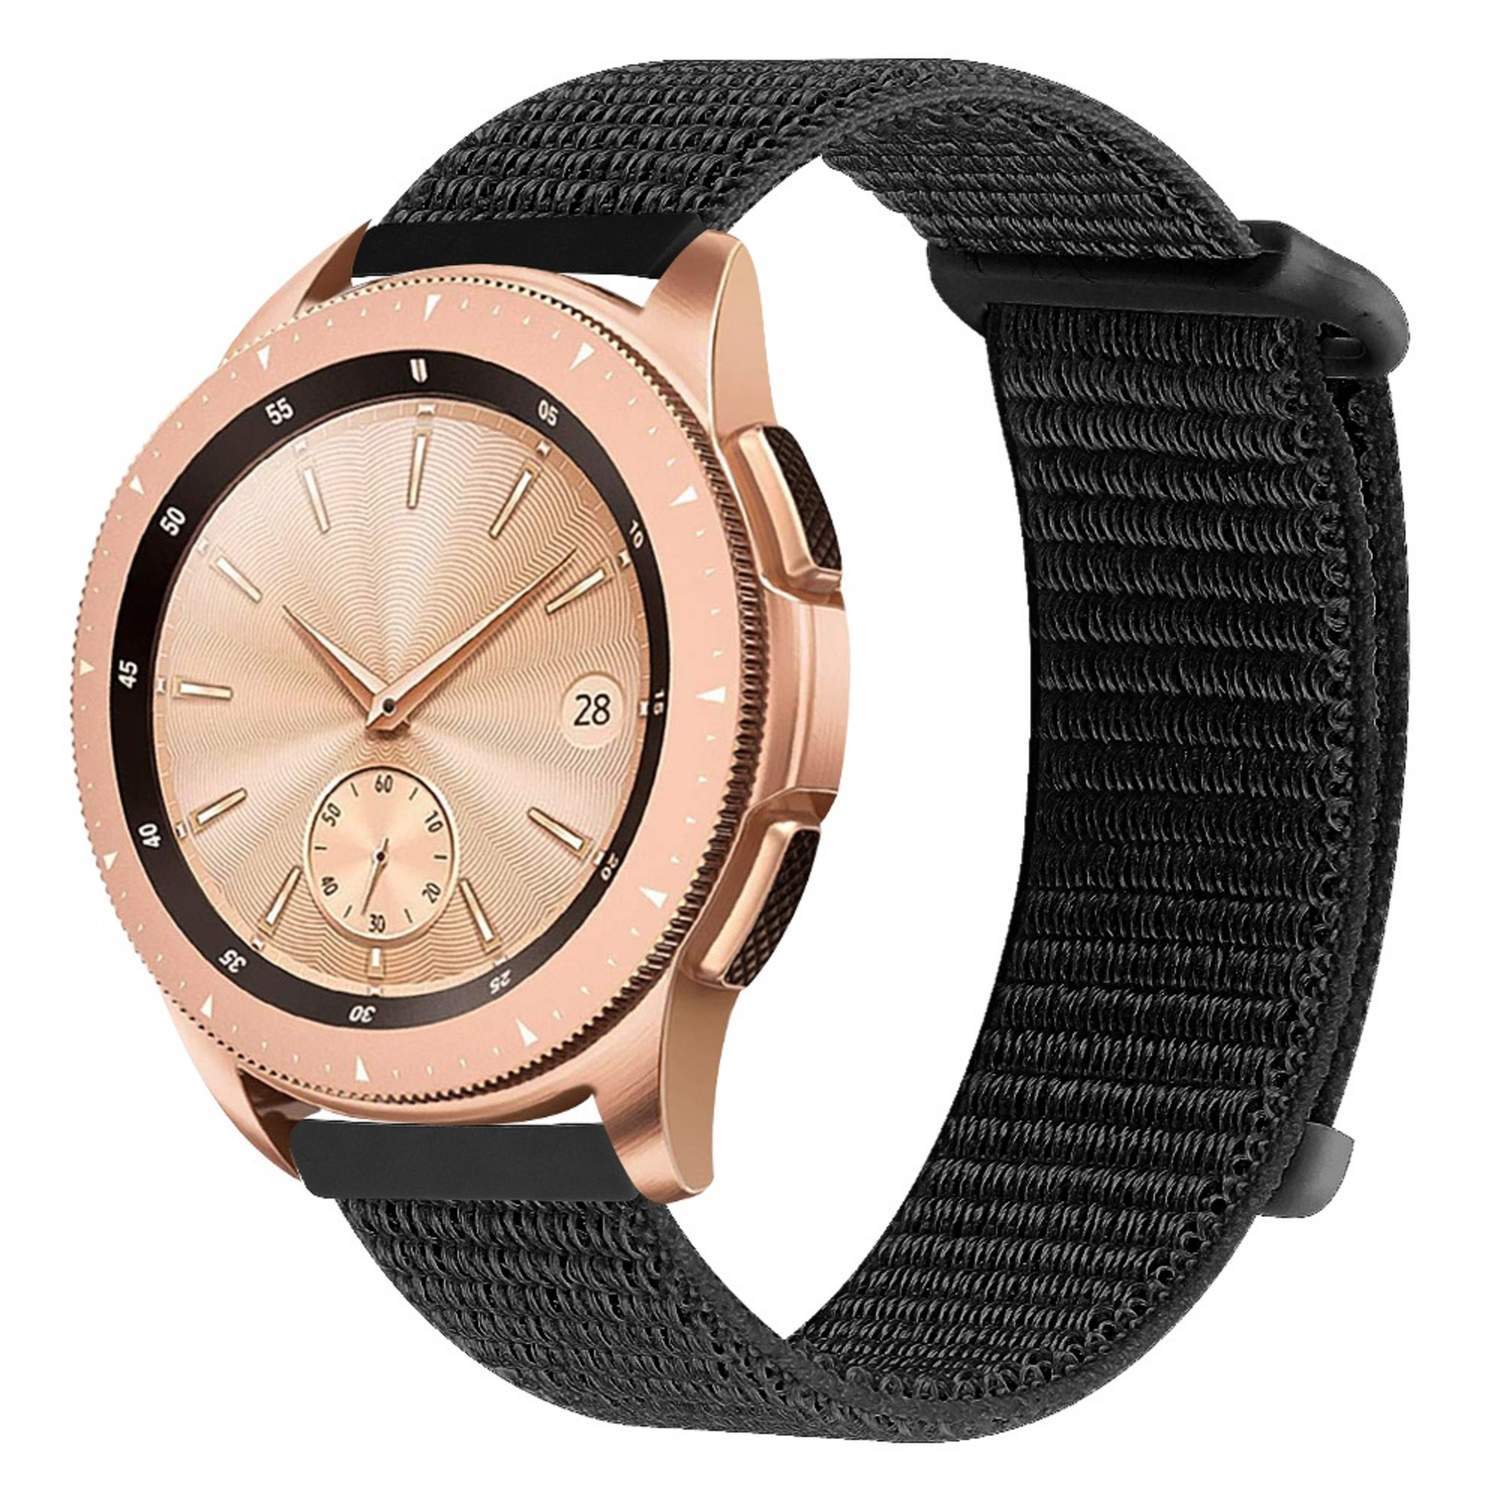 Nylon armbånd til Samsung Galaxy Watch 42mm / Gear Sport - sort - Tilbehør  ure og wearables - Elgiganten